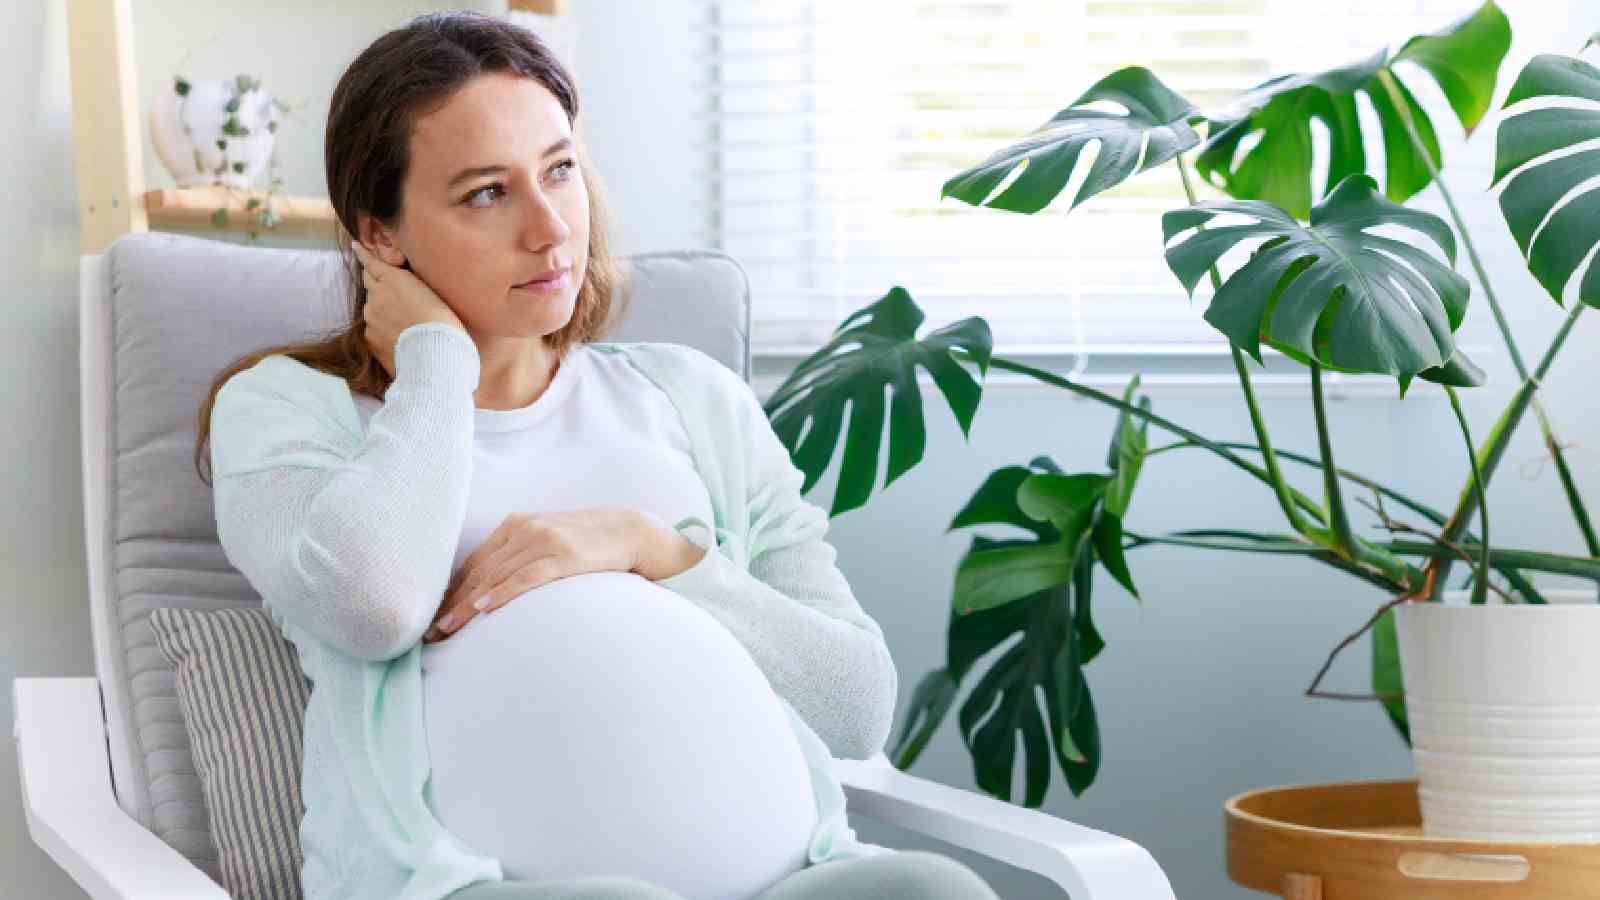 33% महिलाओं को गर्भावस्था के दौरान काफी तनाव का सामना करना पड़ता है, जानिए इसे कैसे प्रबंधित करें